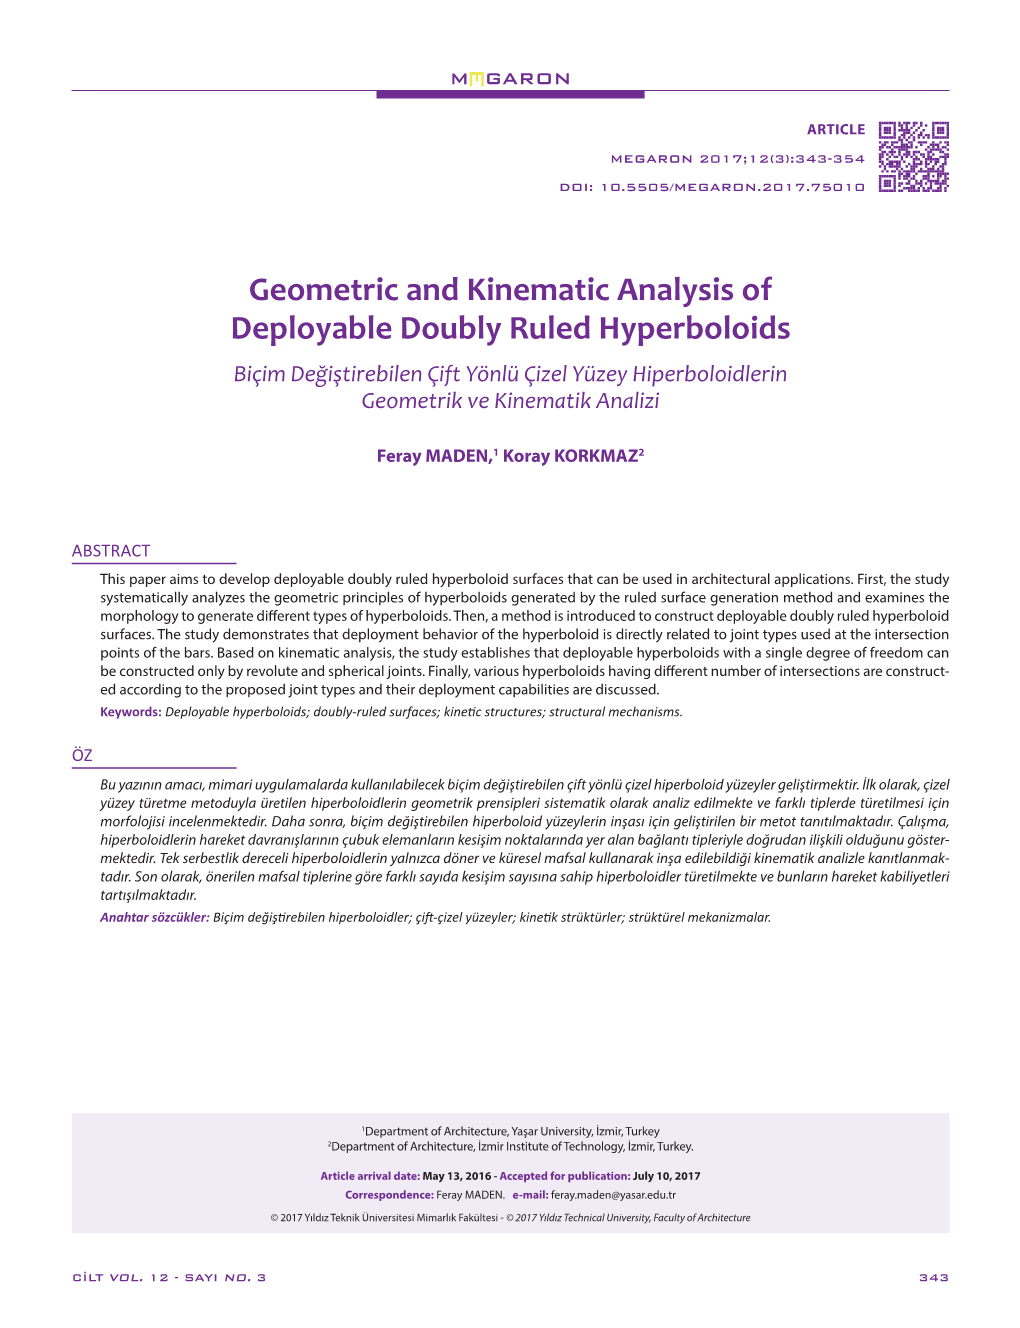 Geometric and Kinematic Analysis of Deployable Doubly Ruled Hyperboloids Biçim Değiştirebilen Çift Yönlü Çizel Yüzey Hiperboloidlerin Geometrik Ve Kinematik Analizi